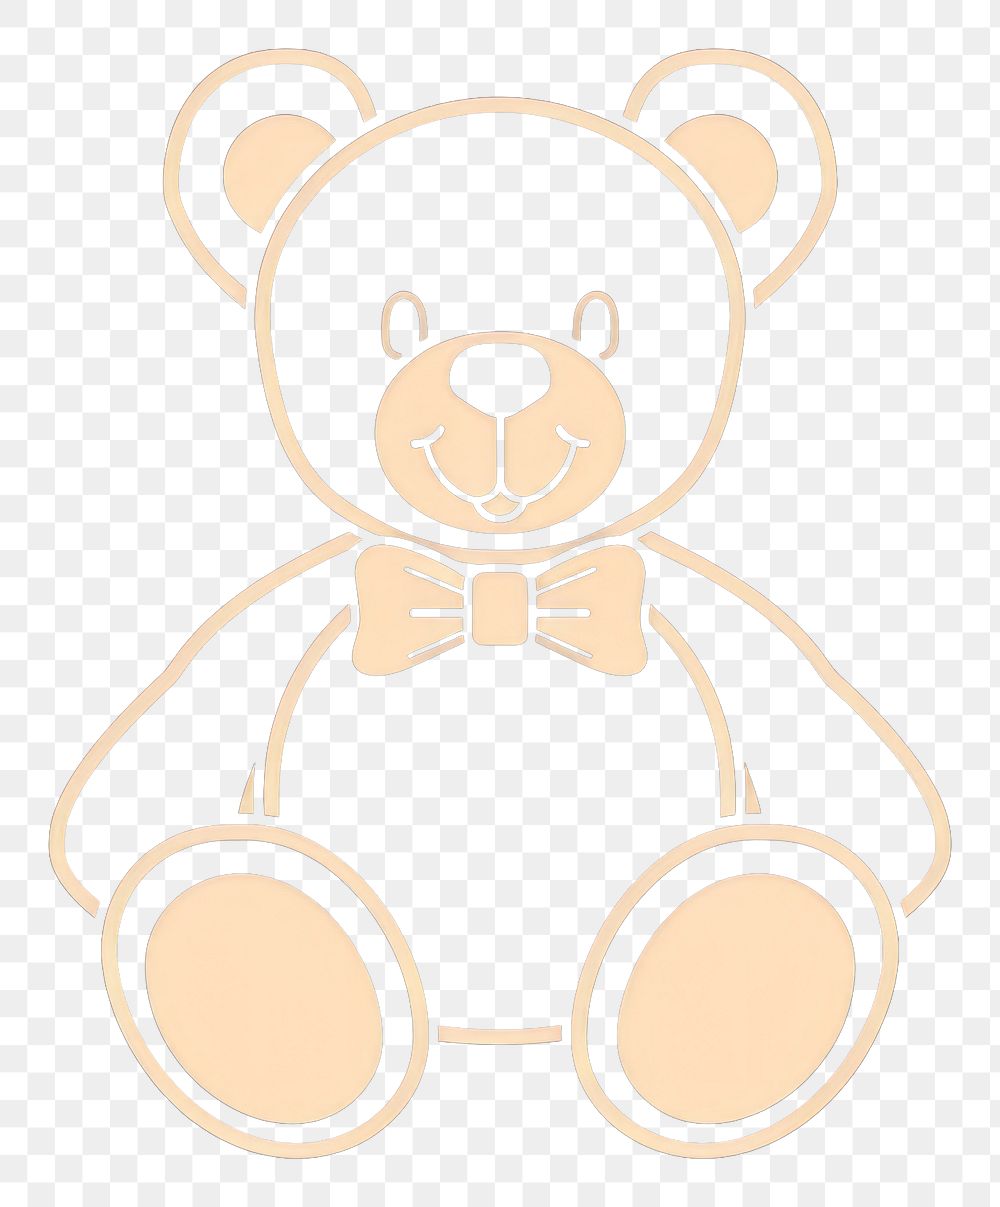 PNG Logo of teddy bear cartoon toy representation.